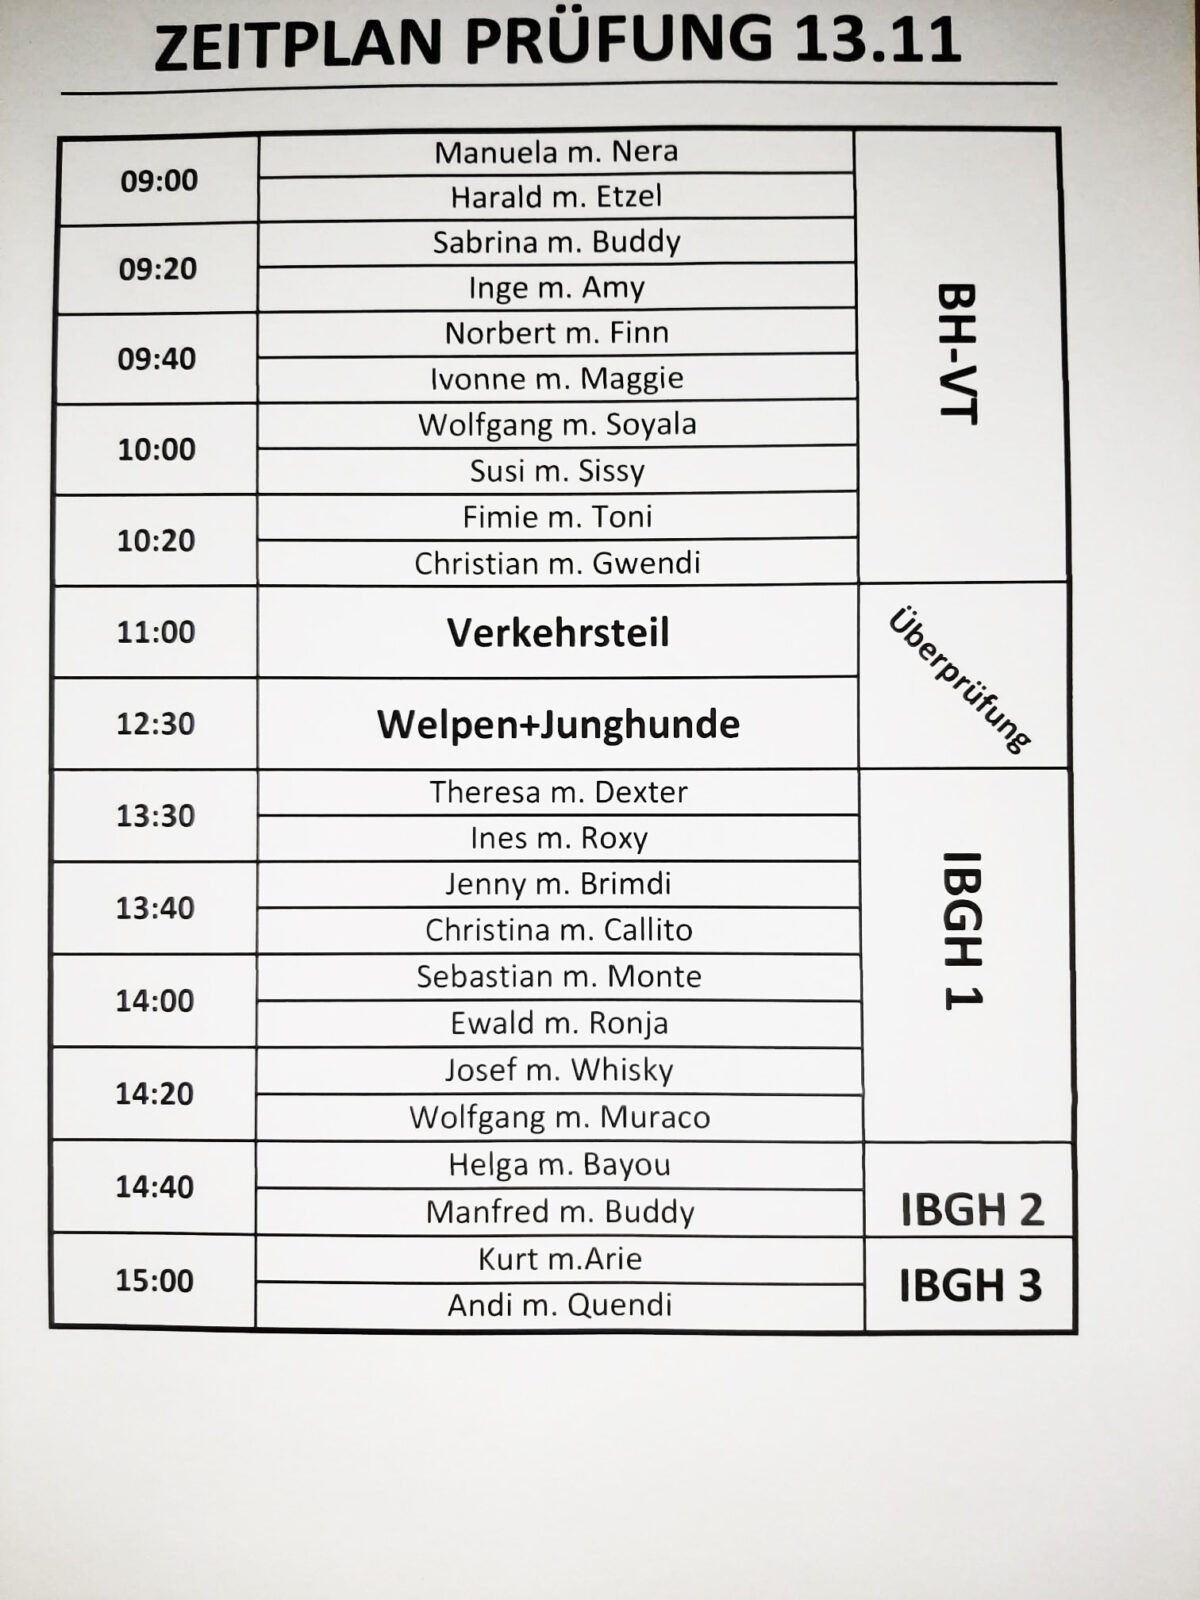 Startliste_Vereinspruefung_13-11-2021